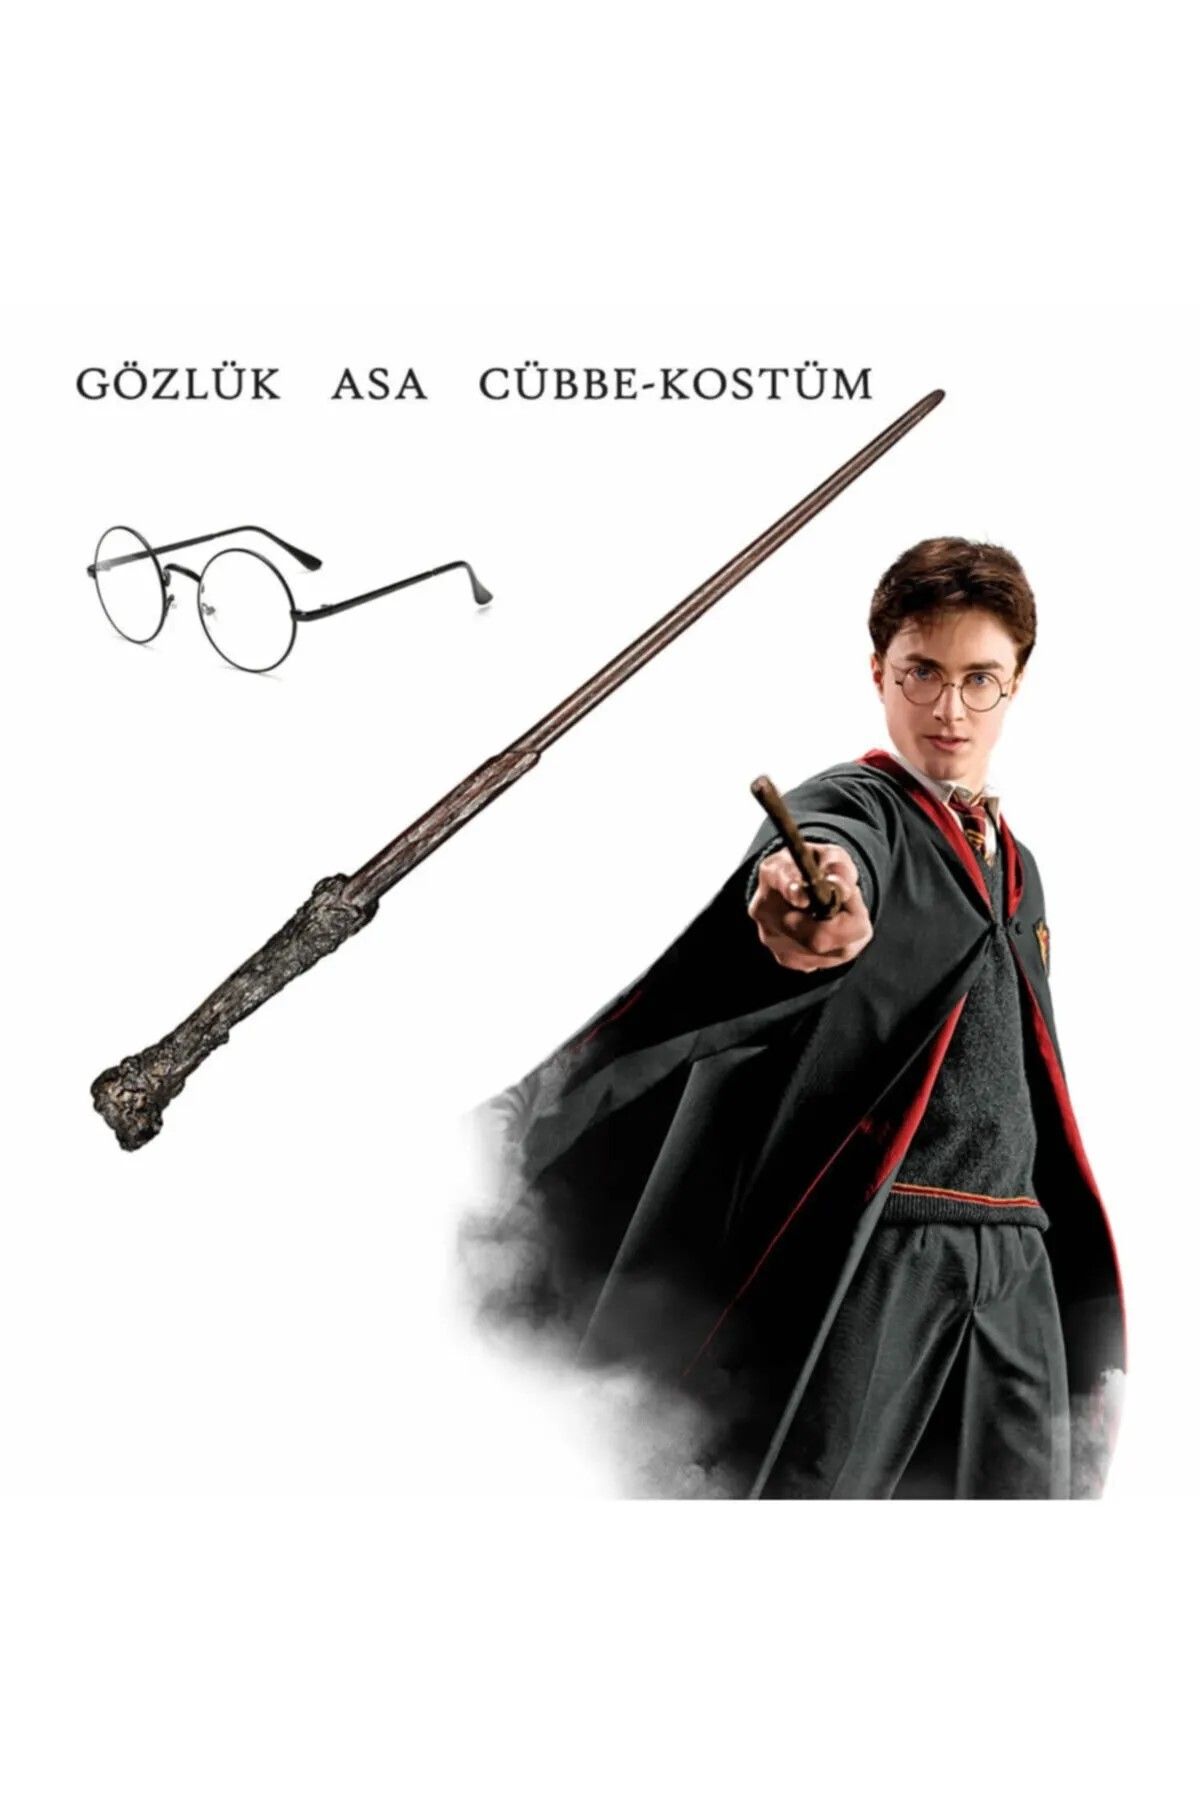 Harry Potter Pelerin Gryffindor Kostüm Cübbe - Asa - Gözlük